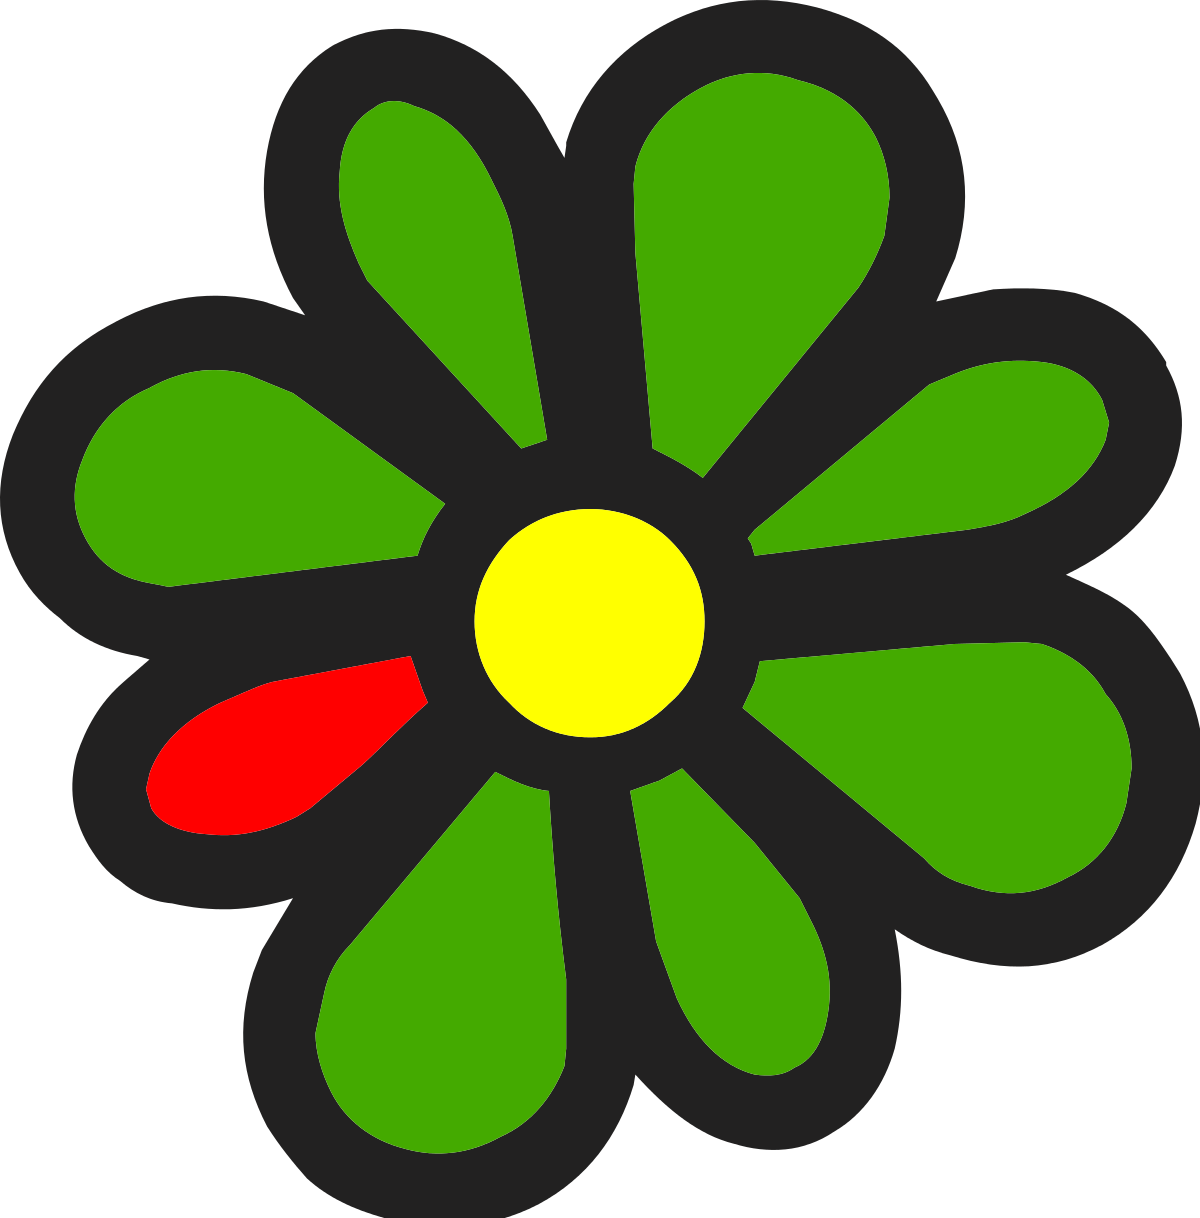 ICQ Transparent Image